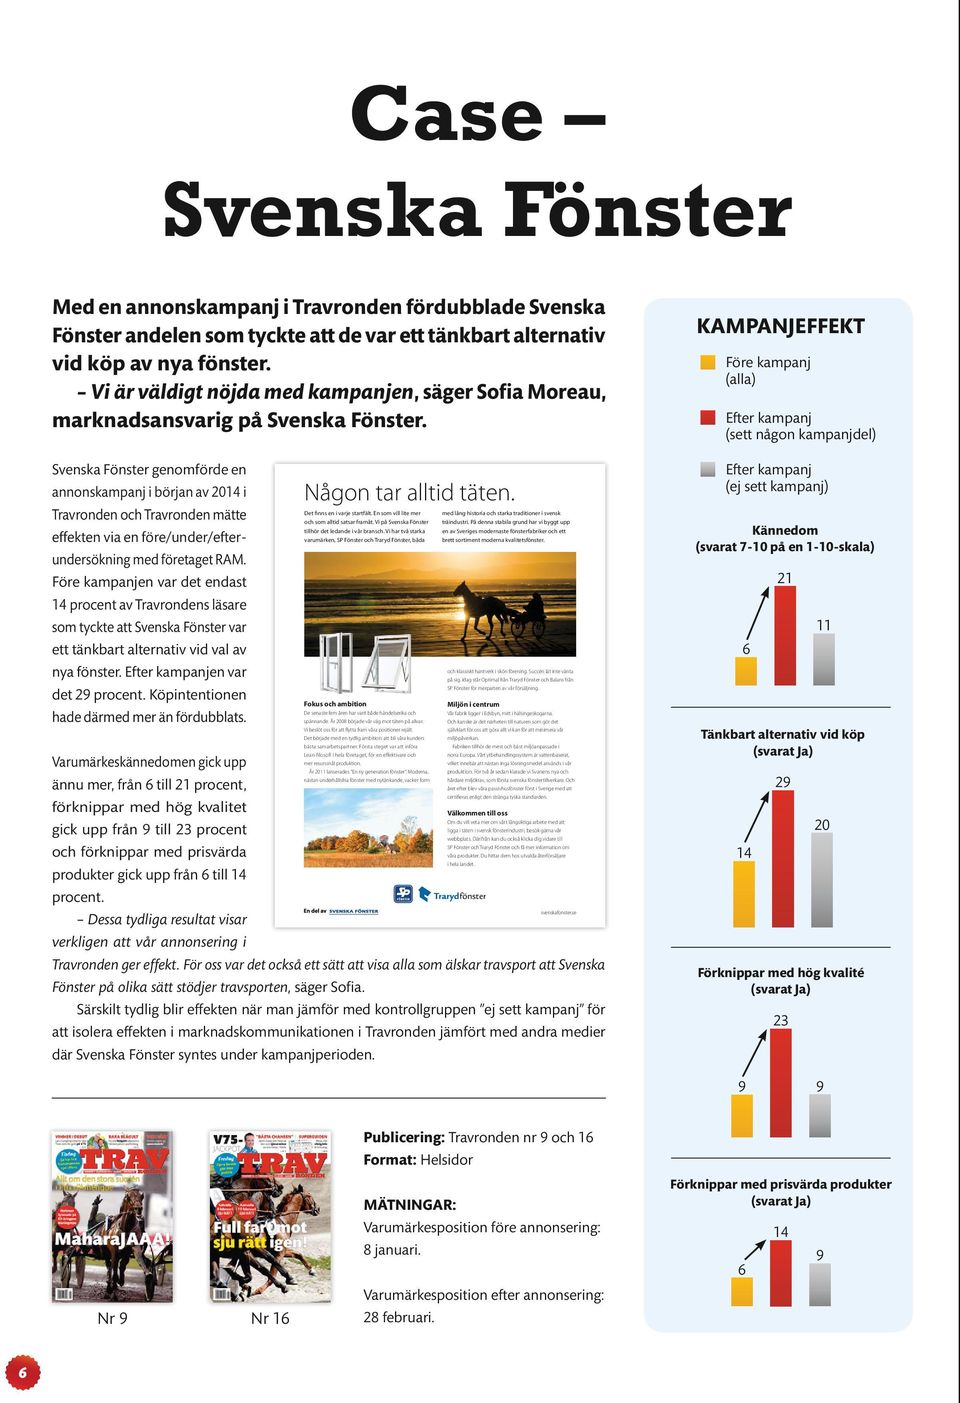 Svenska Fönster genomförde en annonskampanj i början av 2014 i Travronden och Travronden mätte effekten via en före/under/efterundersökning med företaget RAM.